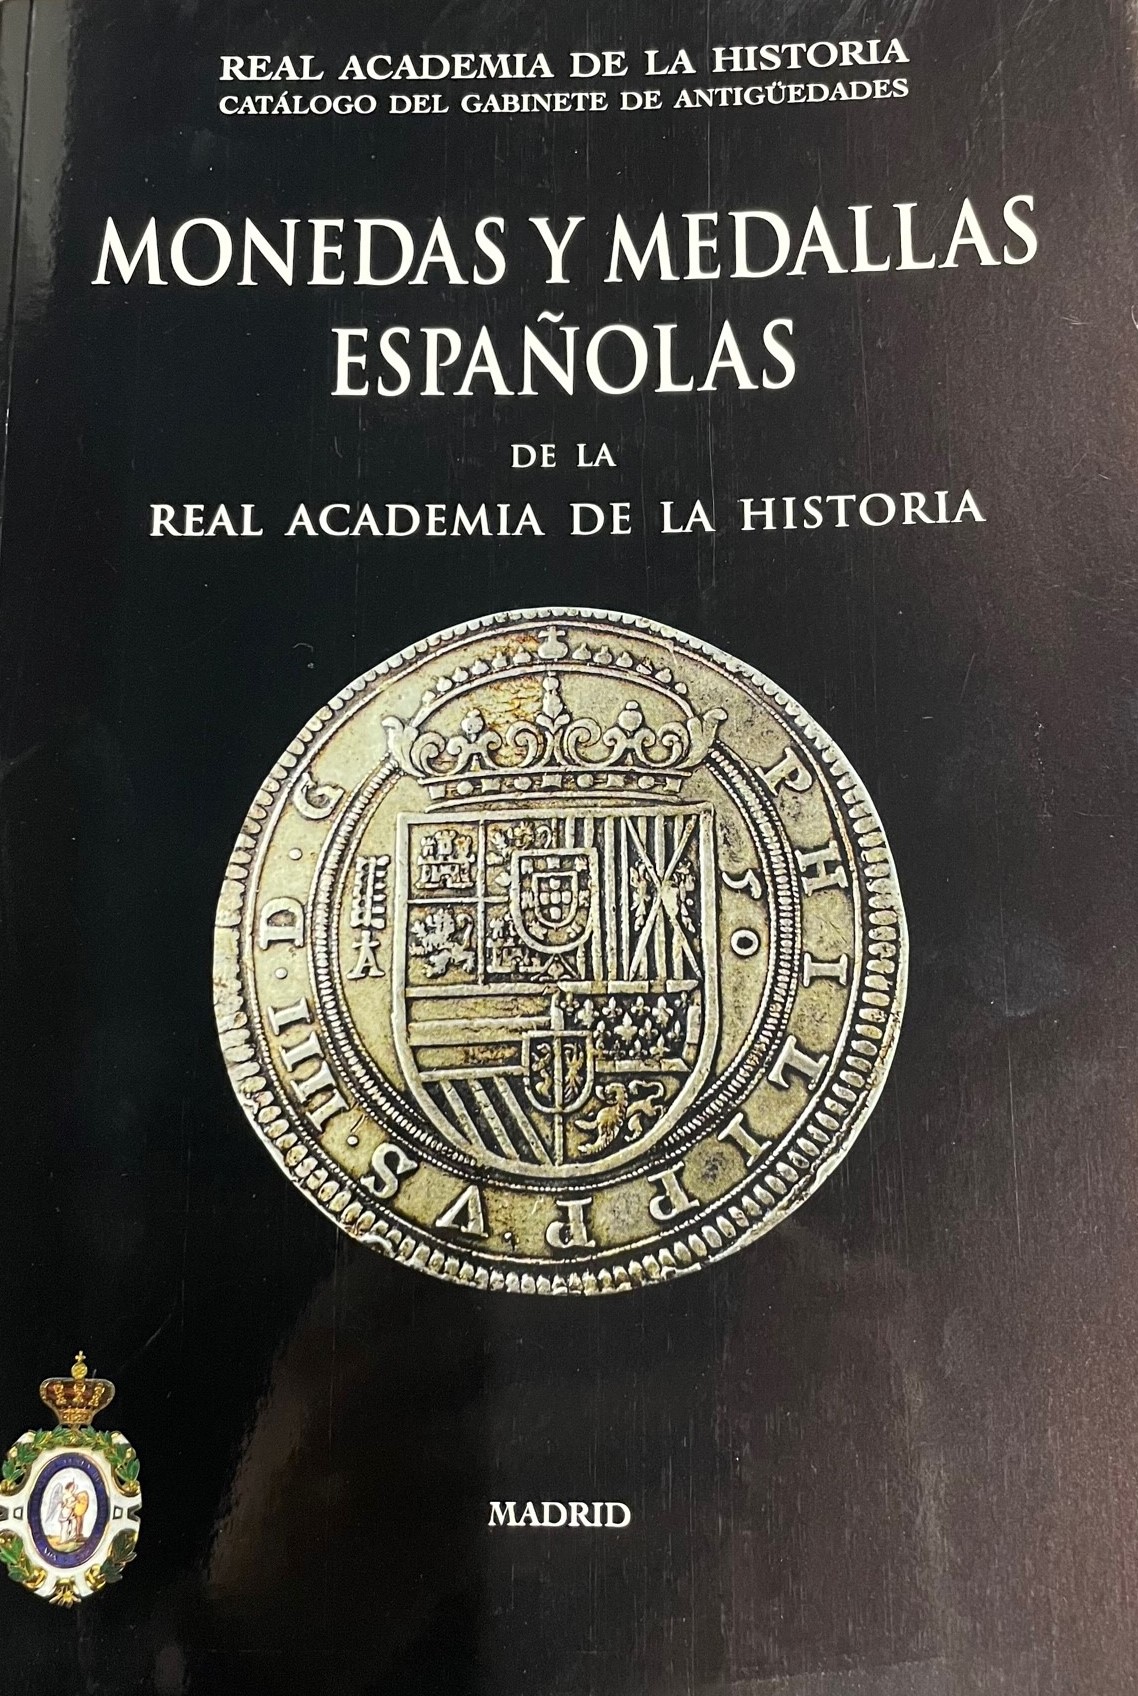 Monedas y medallas españolas de la Real Academia de la Historia. Catálogo del gabinete de antigüedades 